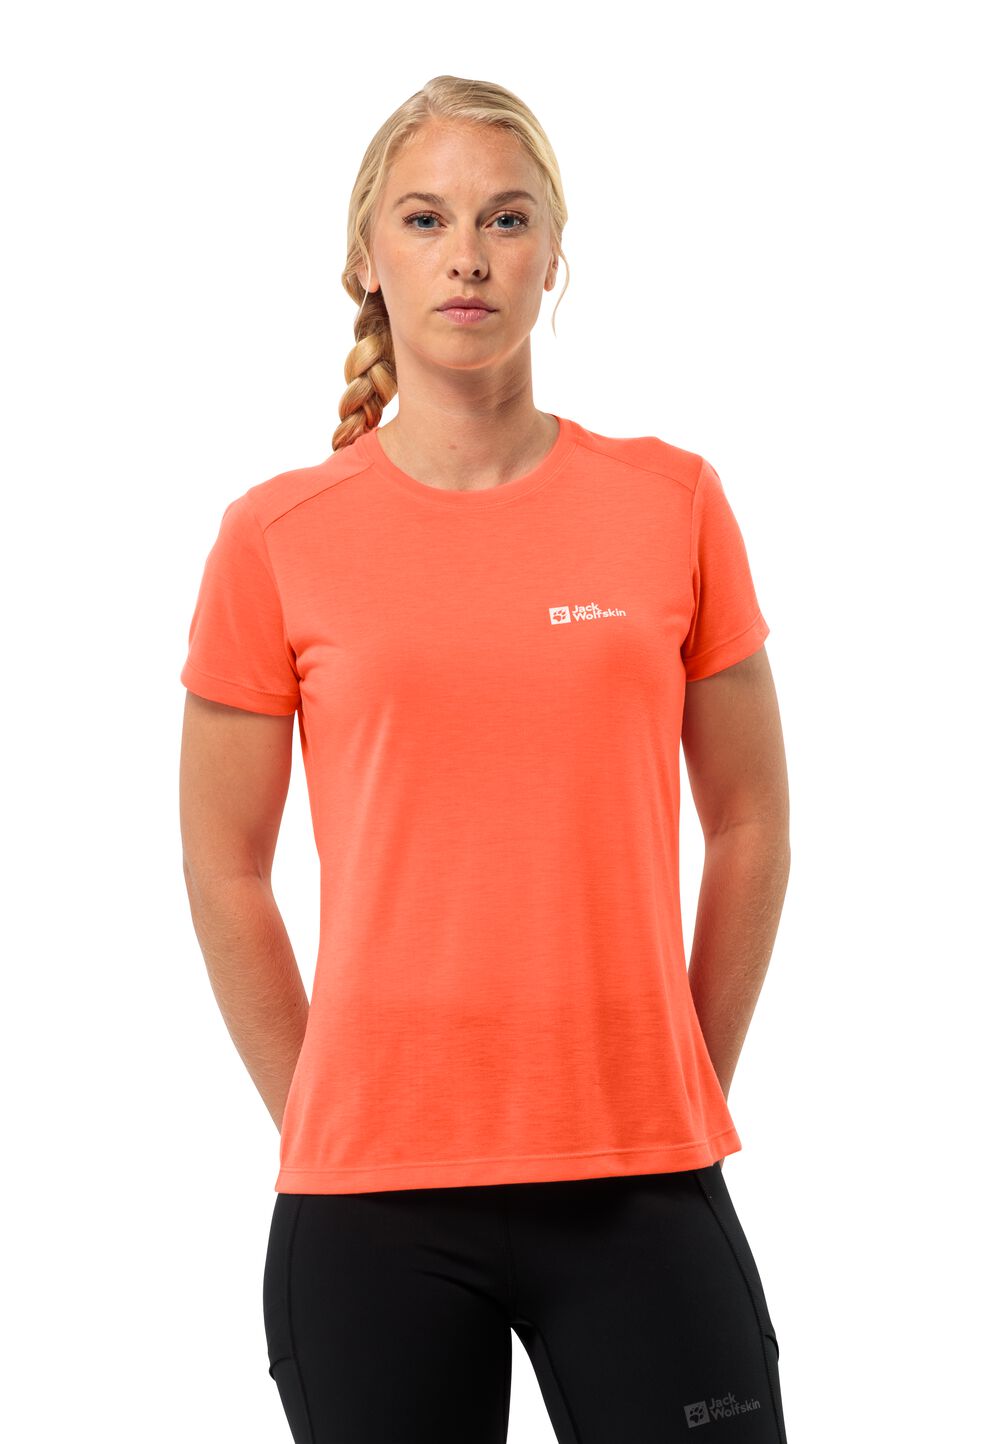 Jack Wolfskin Vonnan S S T-Shirt Women Functioneel shirt Dames M rood digital orange